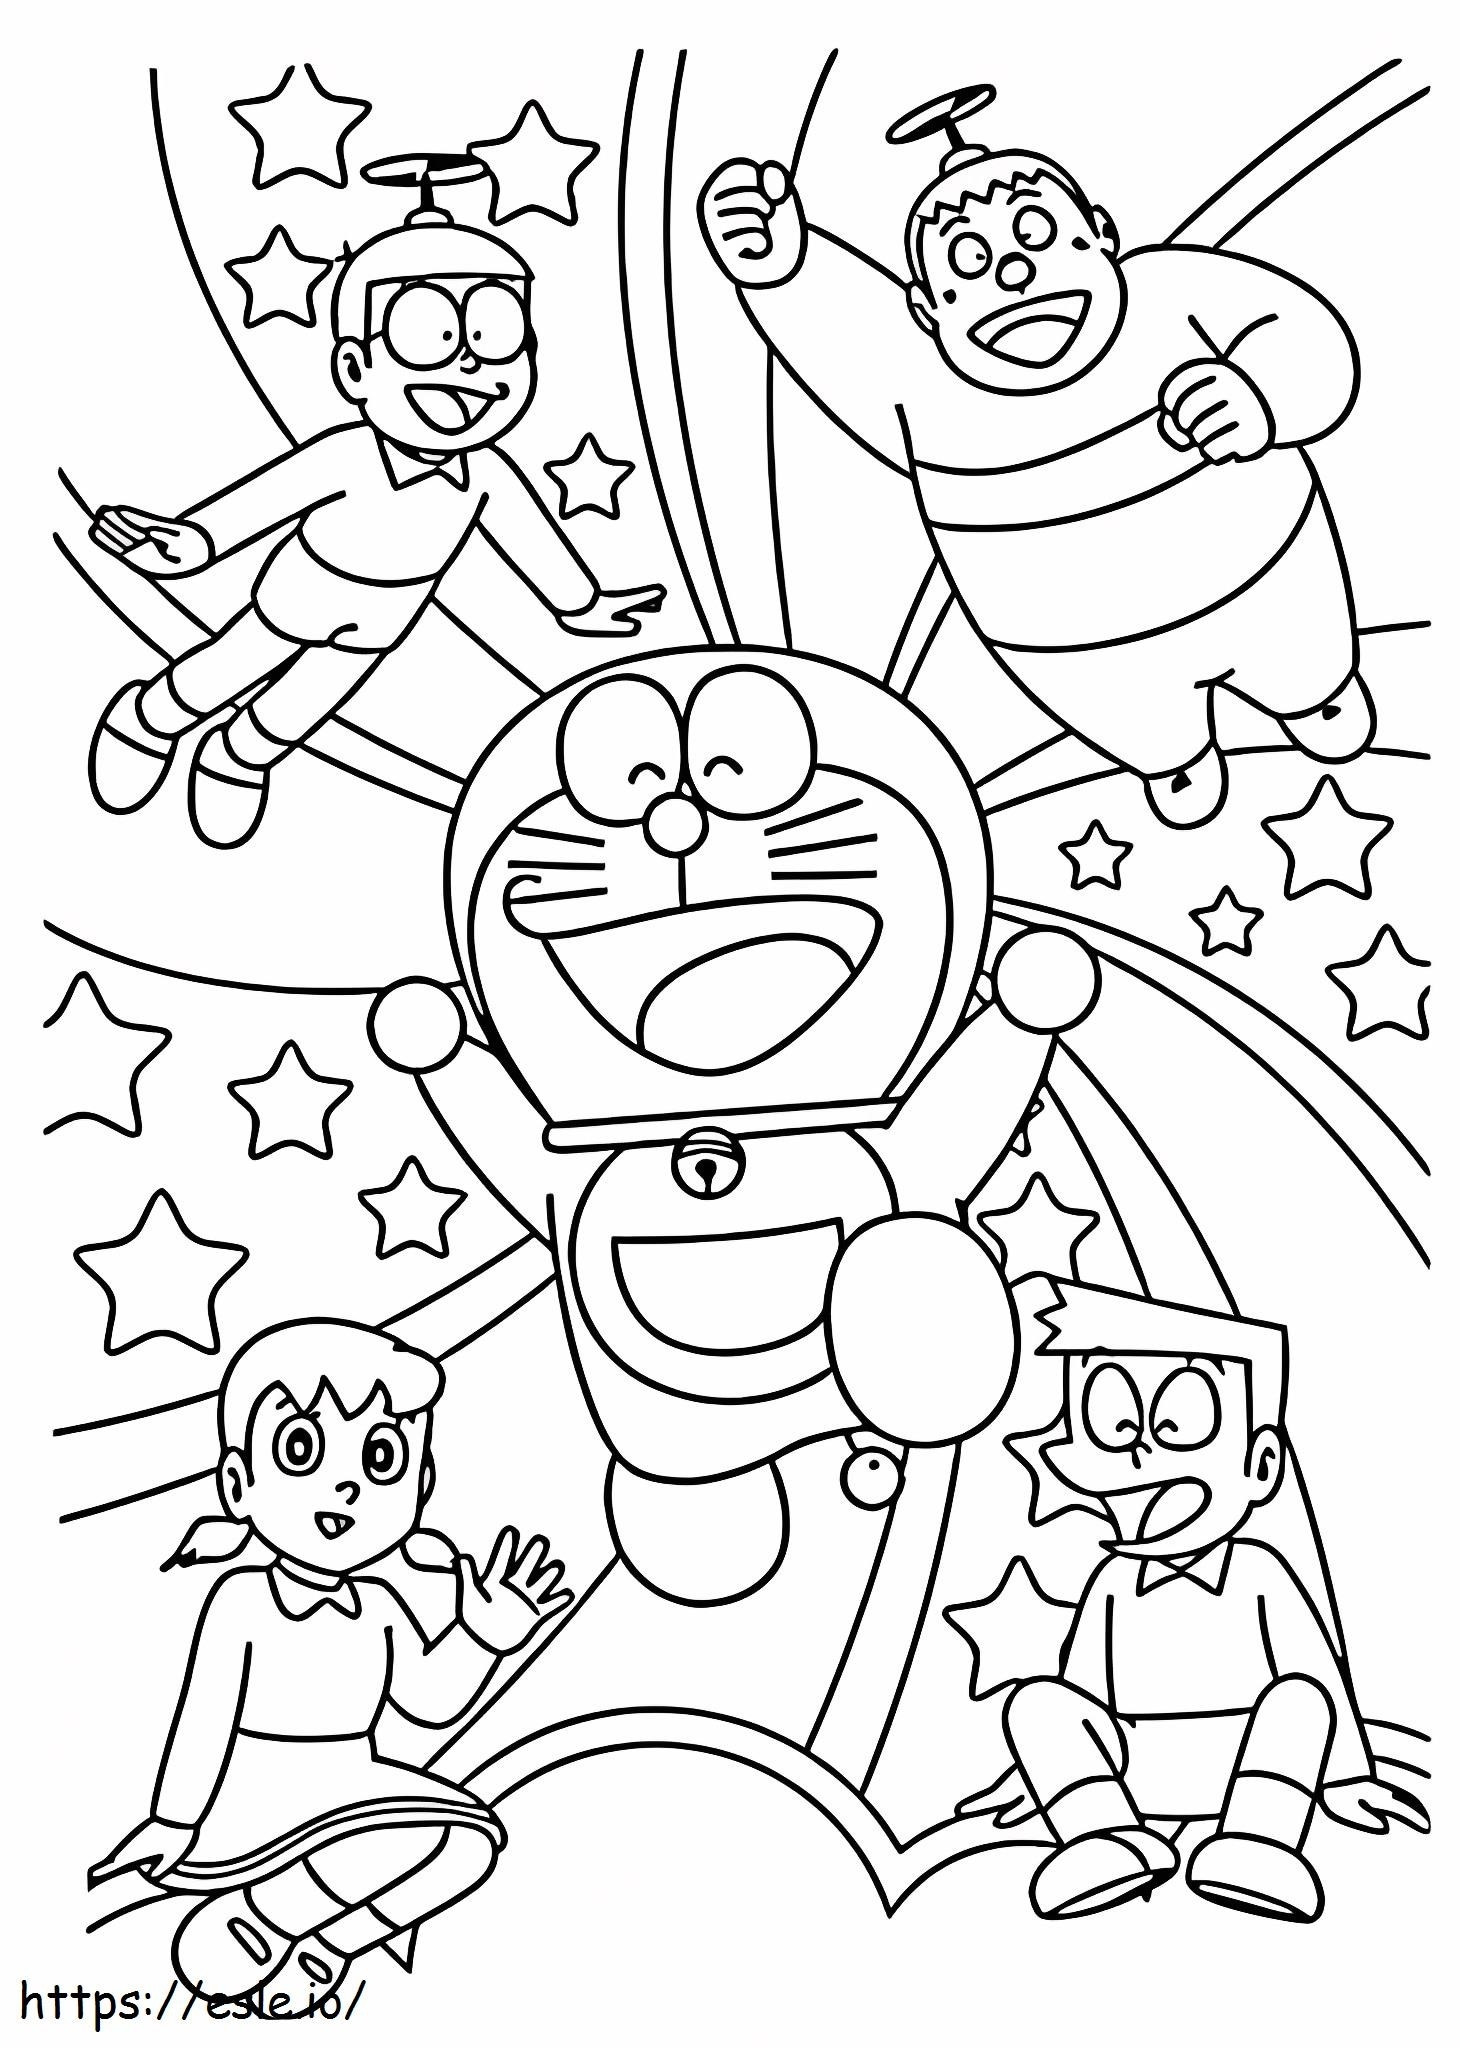 Equipe Nobita e Diversão para colorir